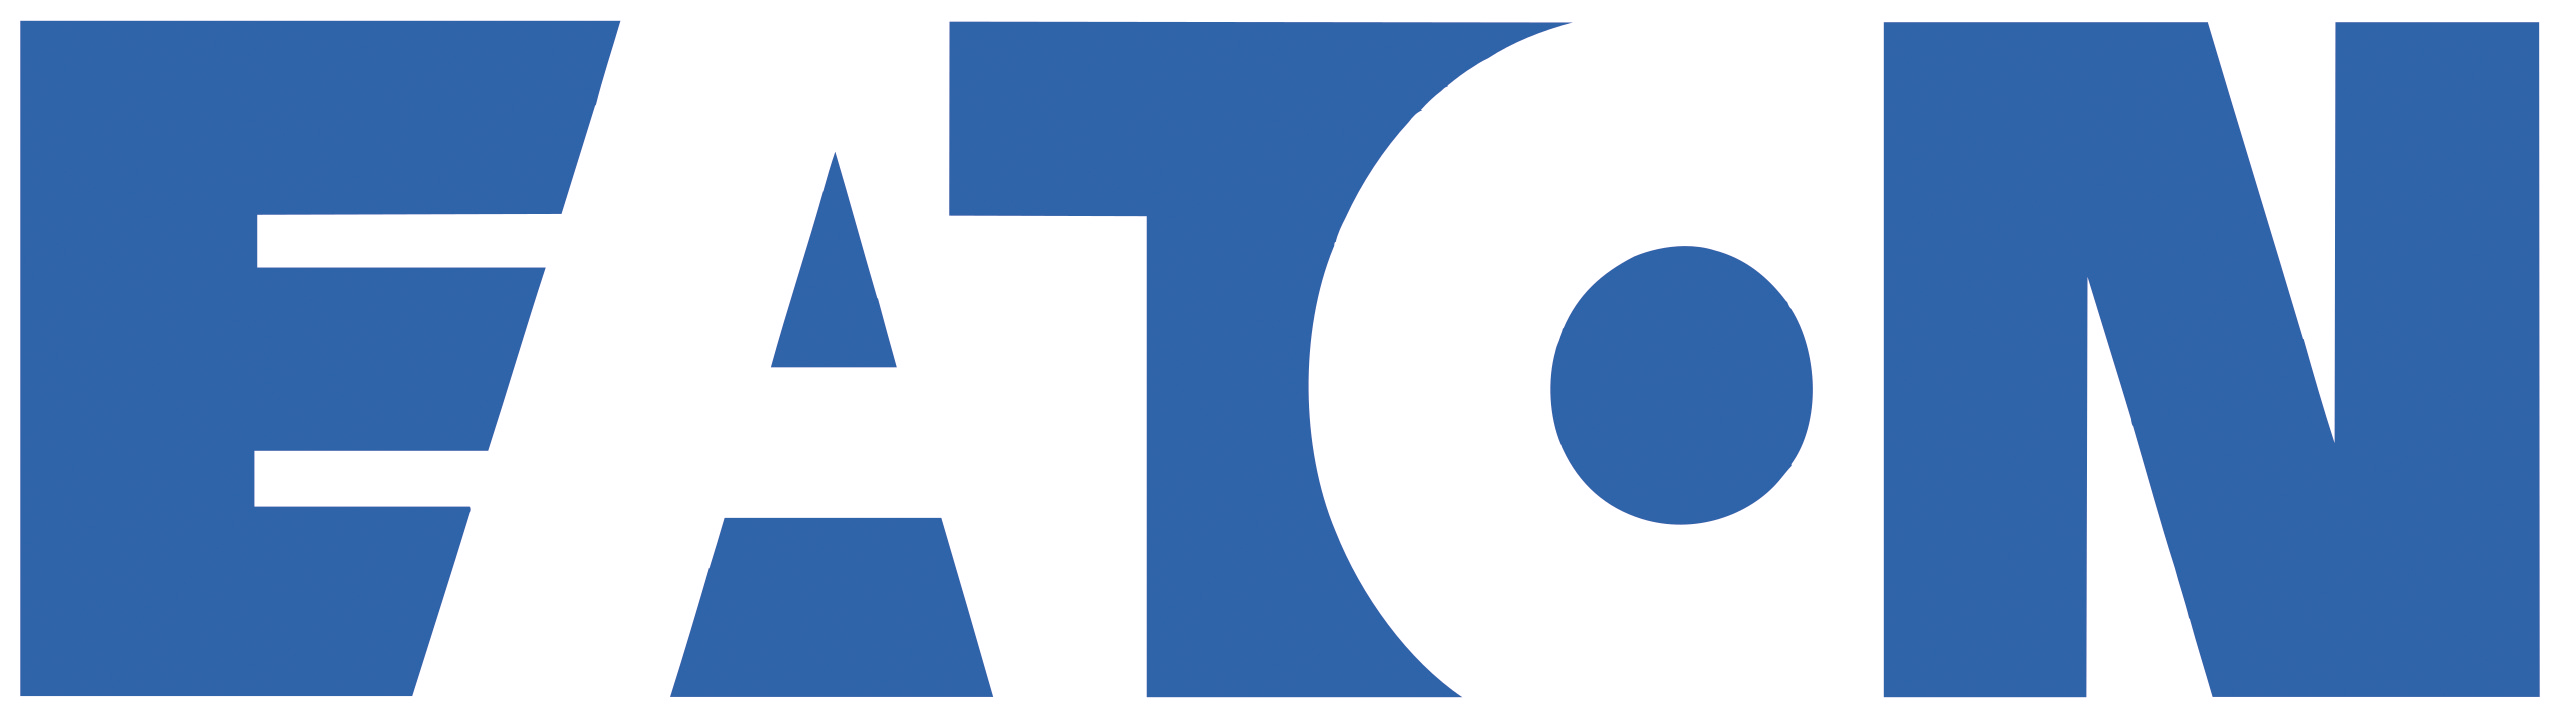 Eaton_Corporation_logo.eps